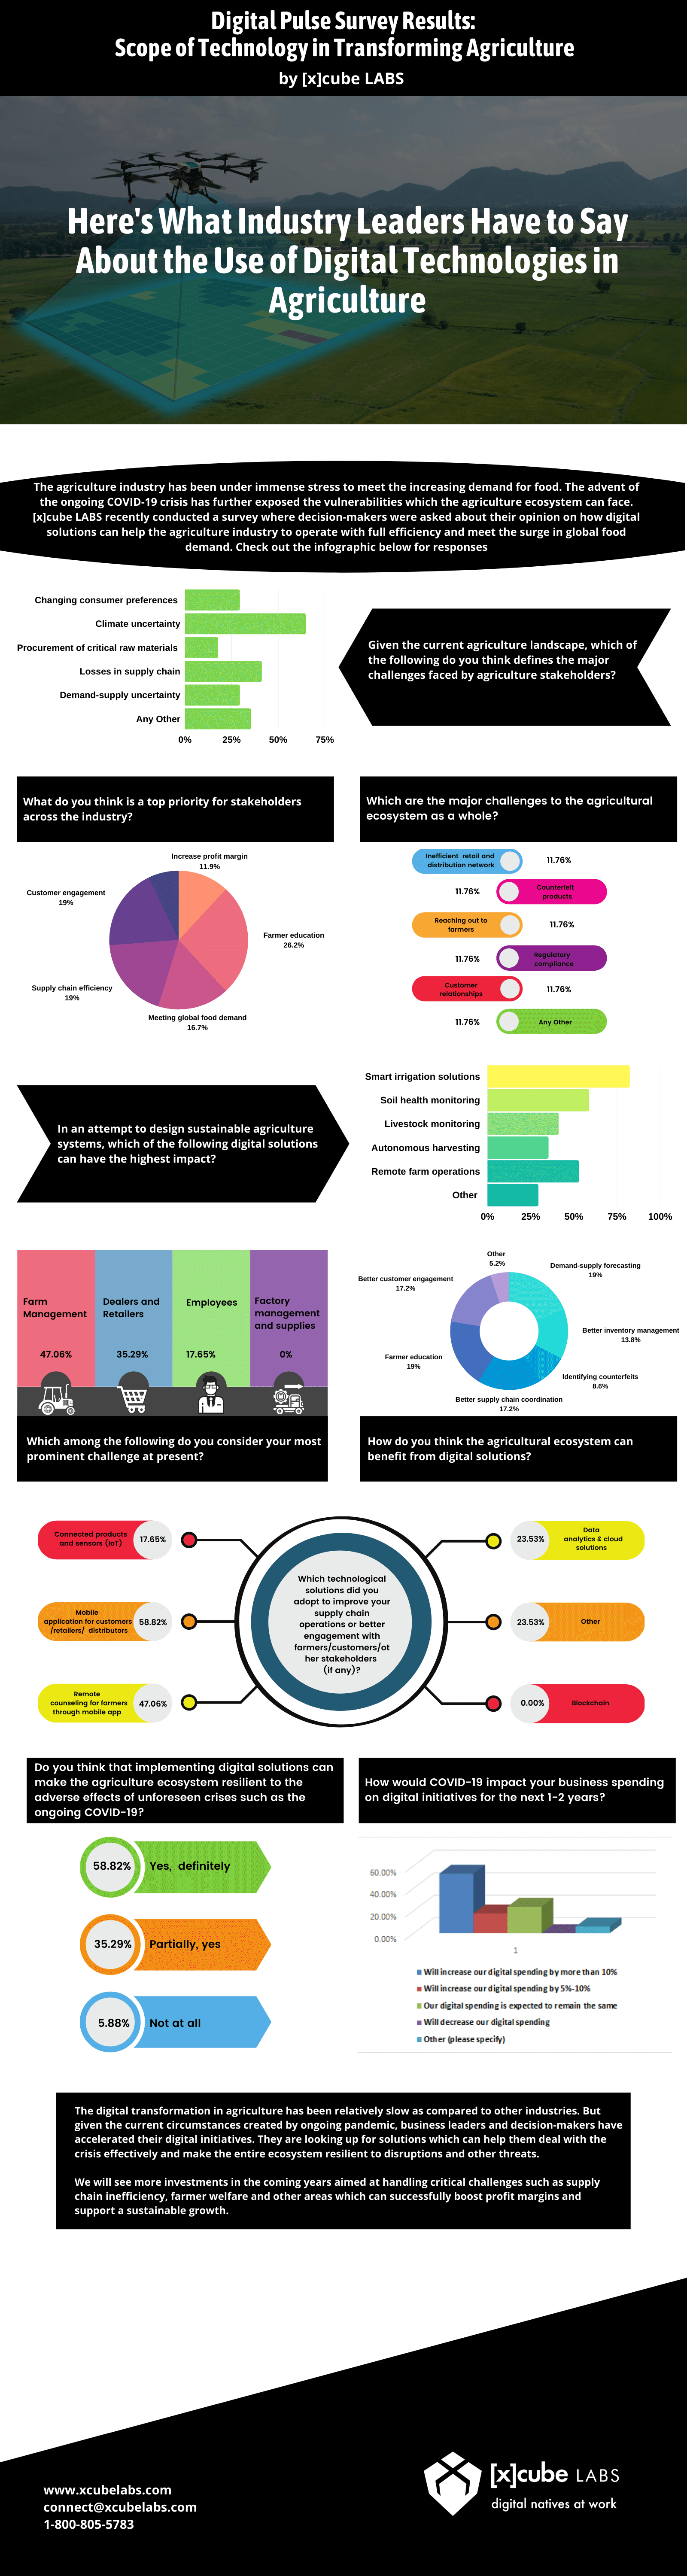 Digital Pulse Survey Results